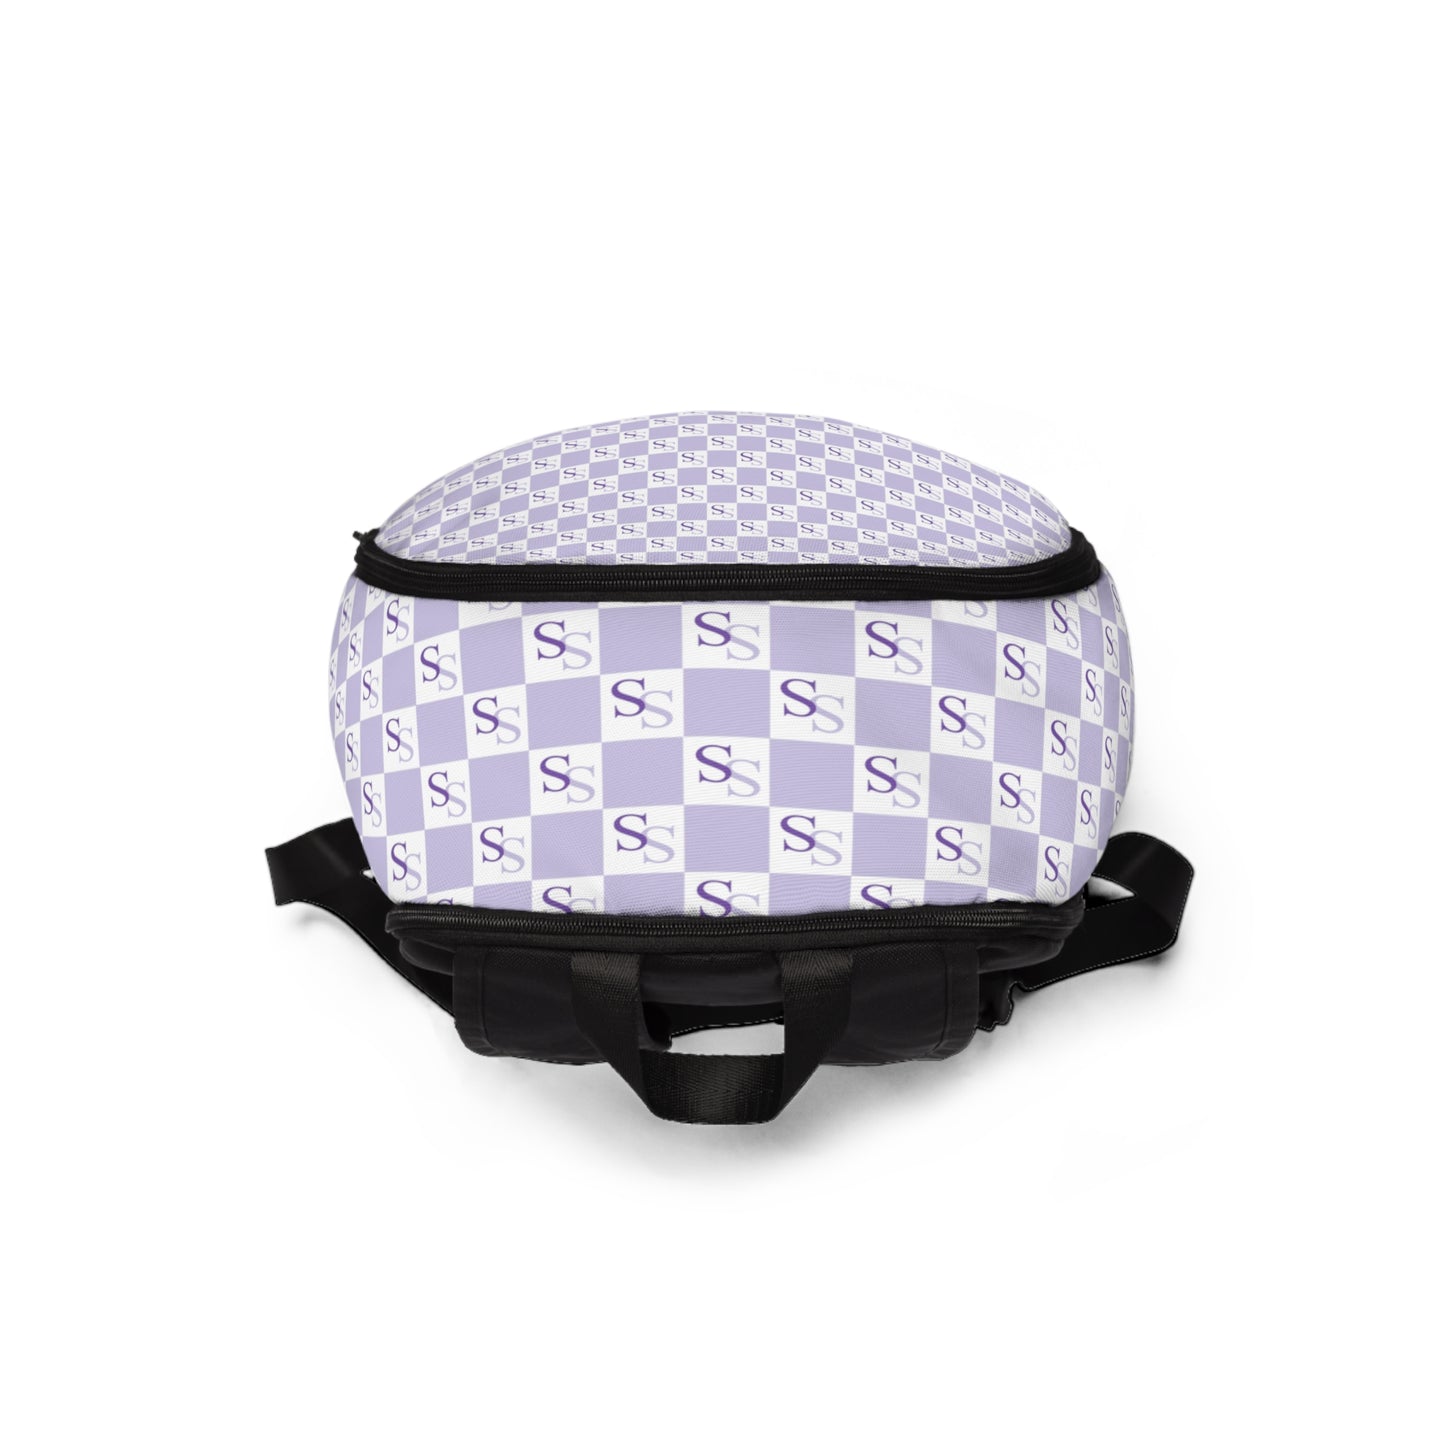 Light Purple Unisex Fabric Backpack